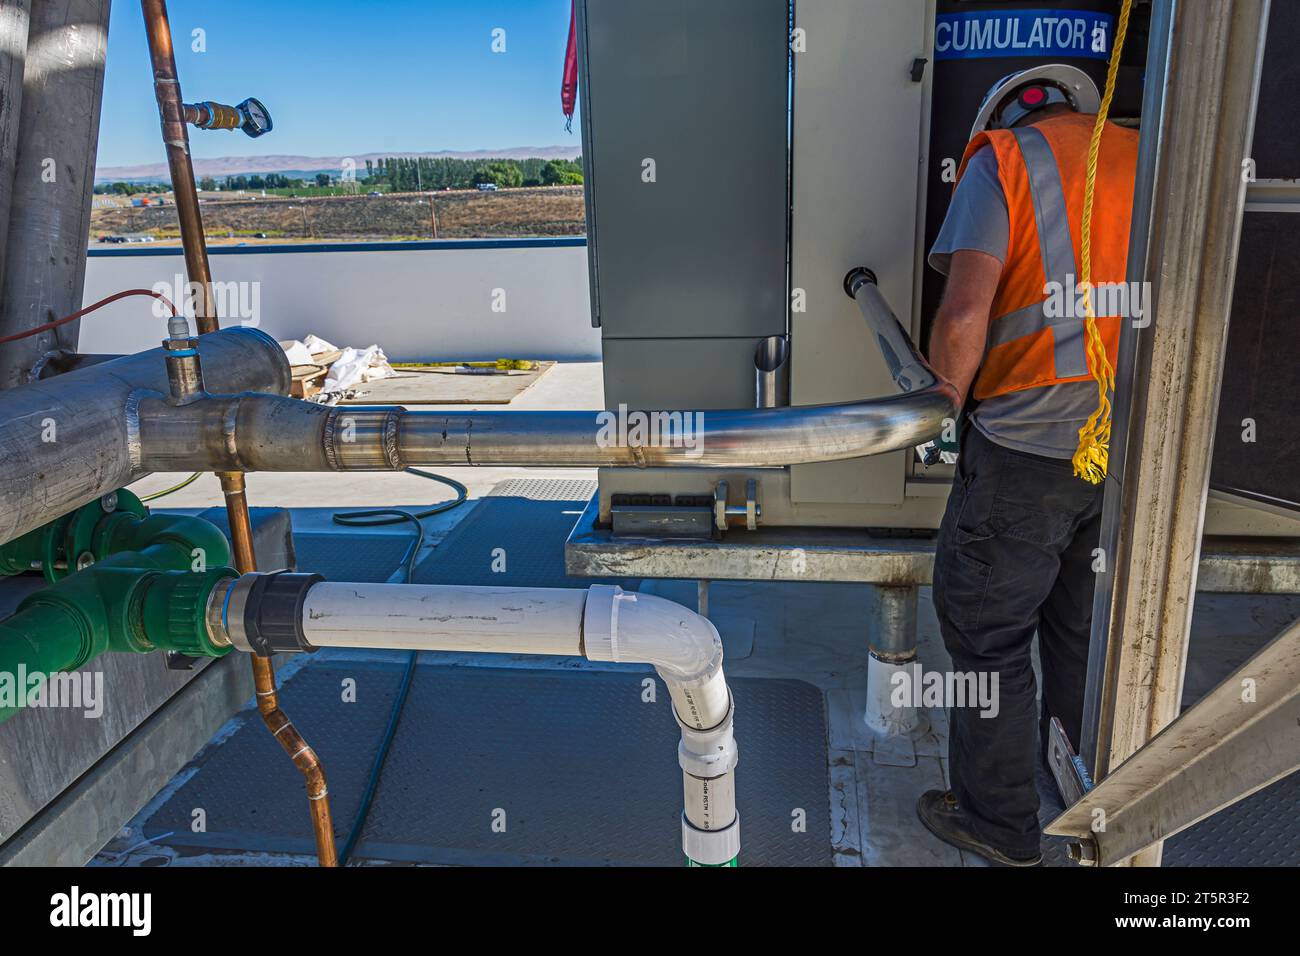 Un tuyau inoxydable nouvellement soudé et un ouvrier travaillant dans le panneau de compresseur d'un entrepôt de stockage de CO2 (réfrigération industrielle) sur le toit. Banque D'Images